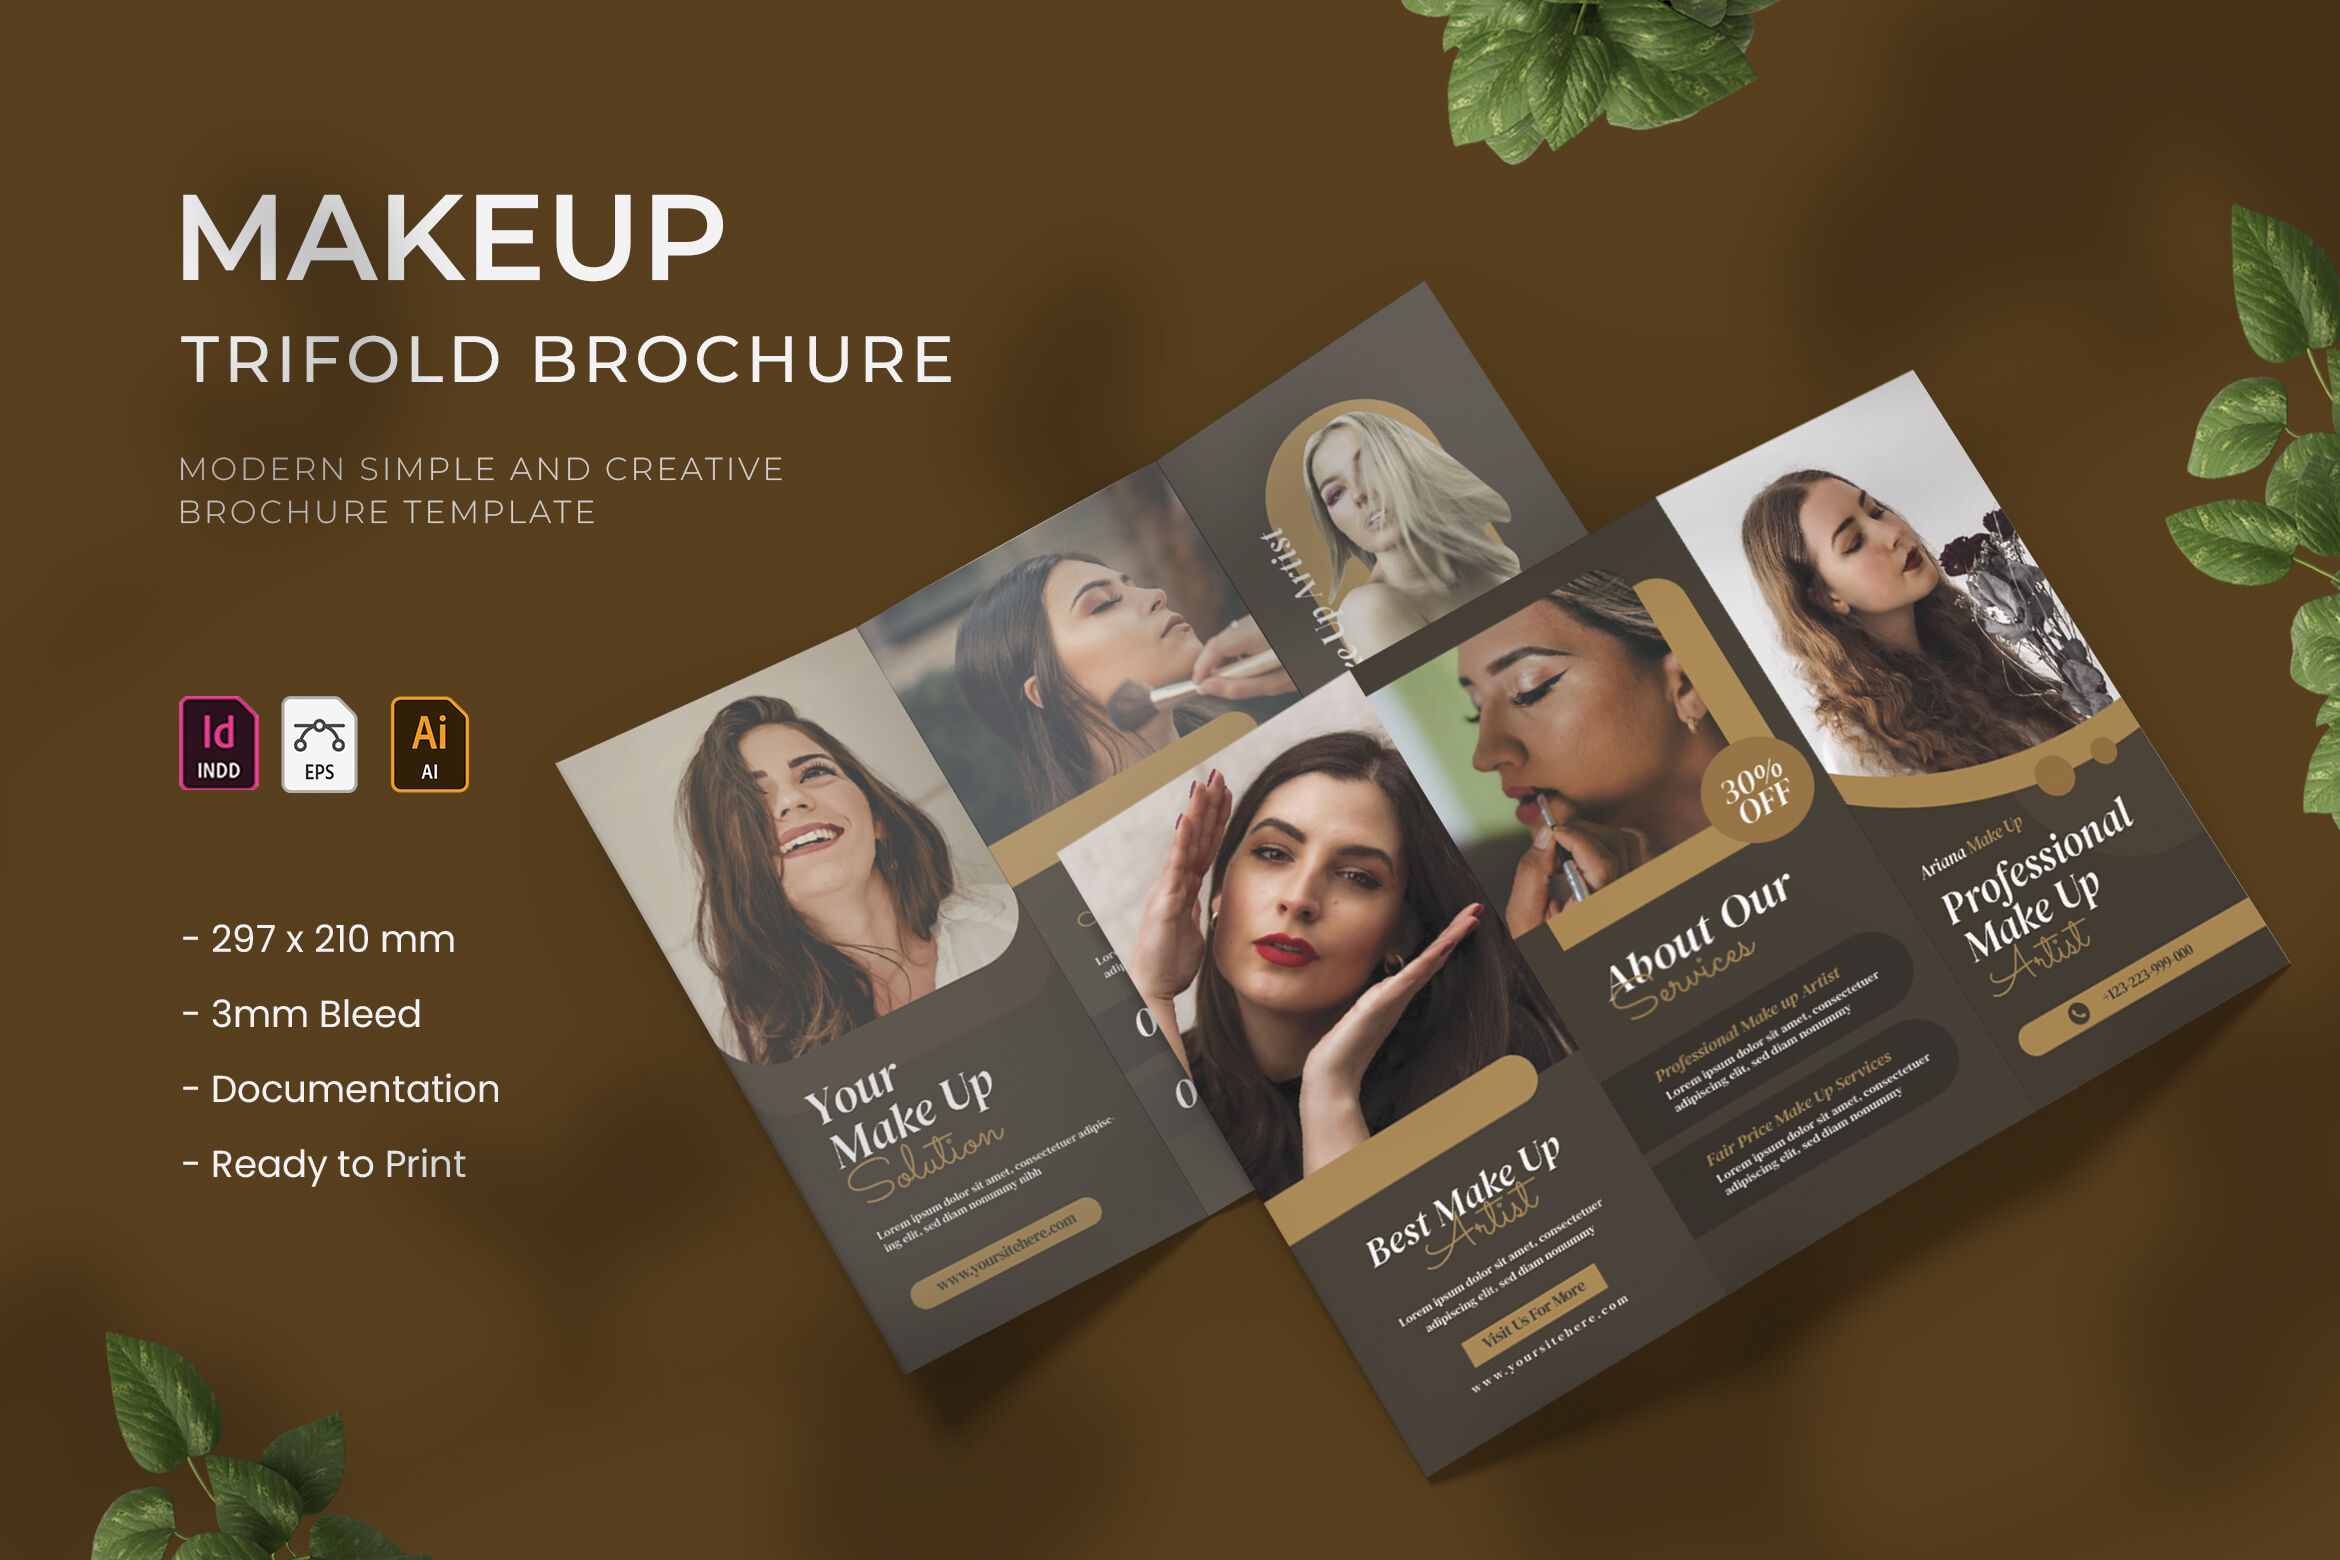 Makeup Trifold Brochure By Vunira